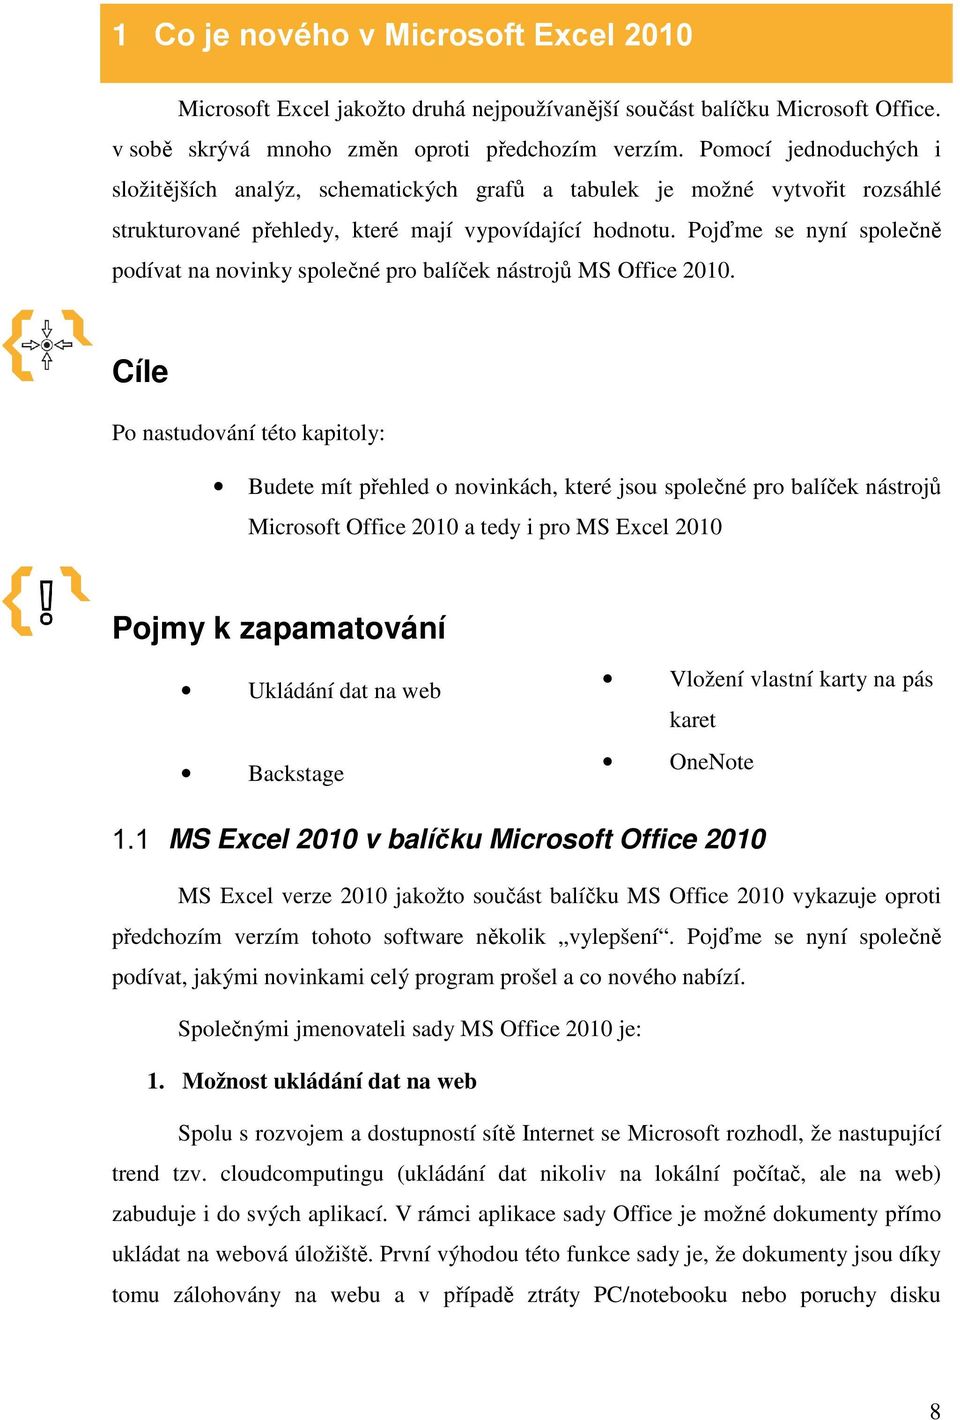 Pojďme se nyní společně podívat na novinky společné pro balíček nástrojů MS Office 2010.